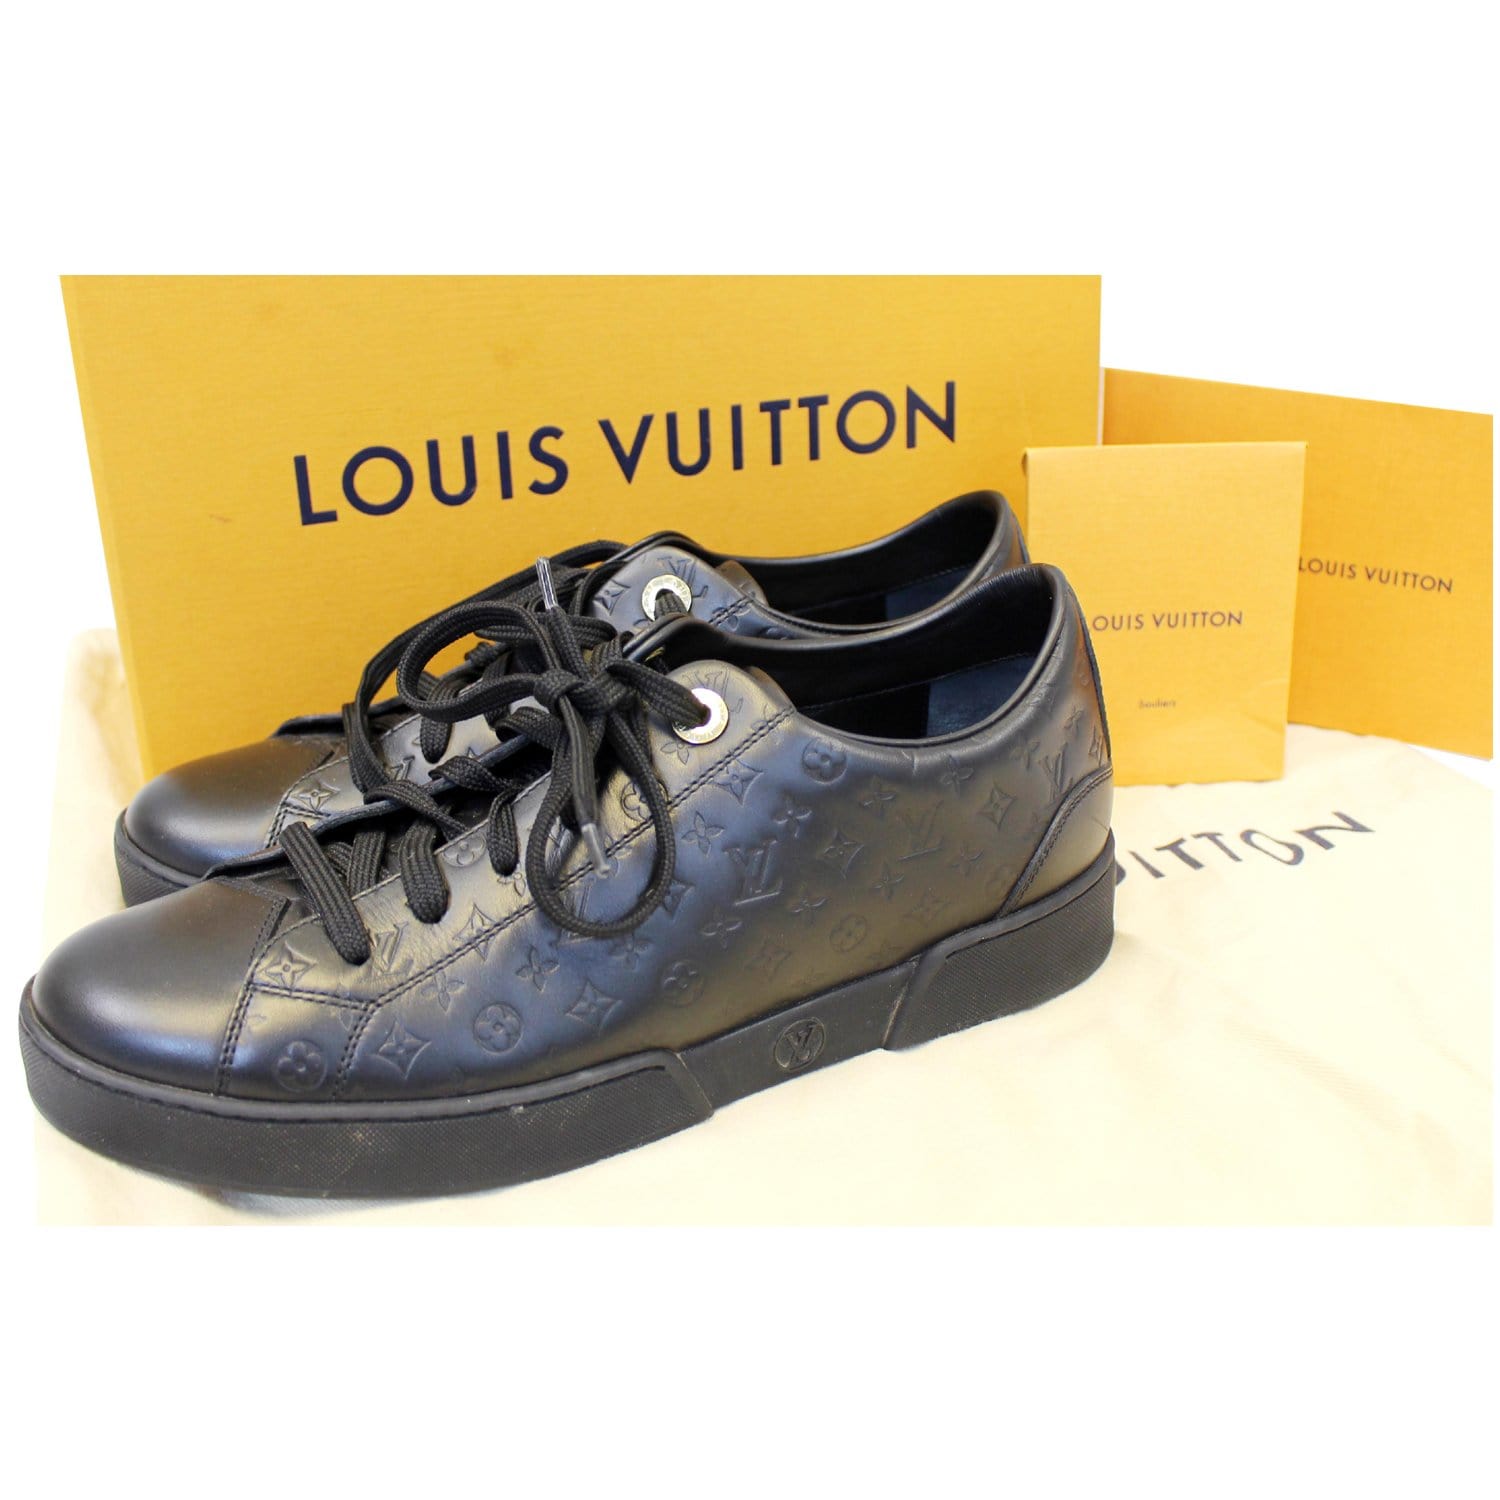 Bạn đã hiểu hết về họa tiết Louis Vuitton kinh điển?